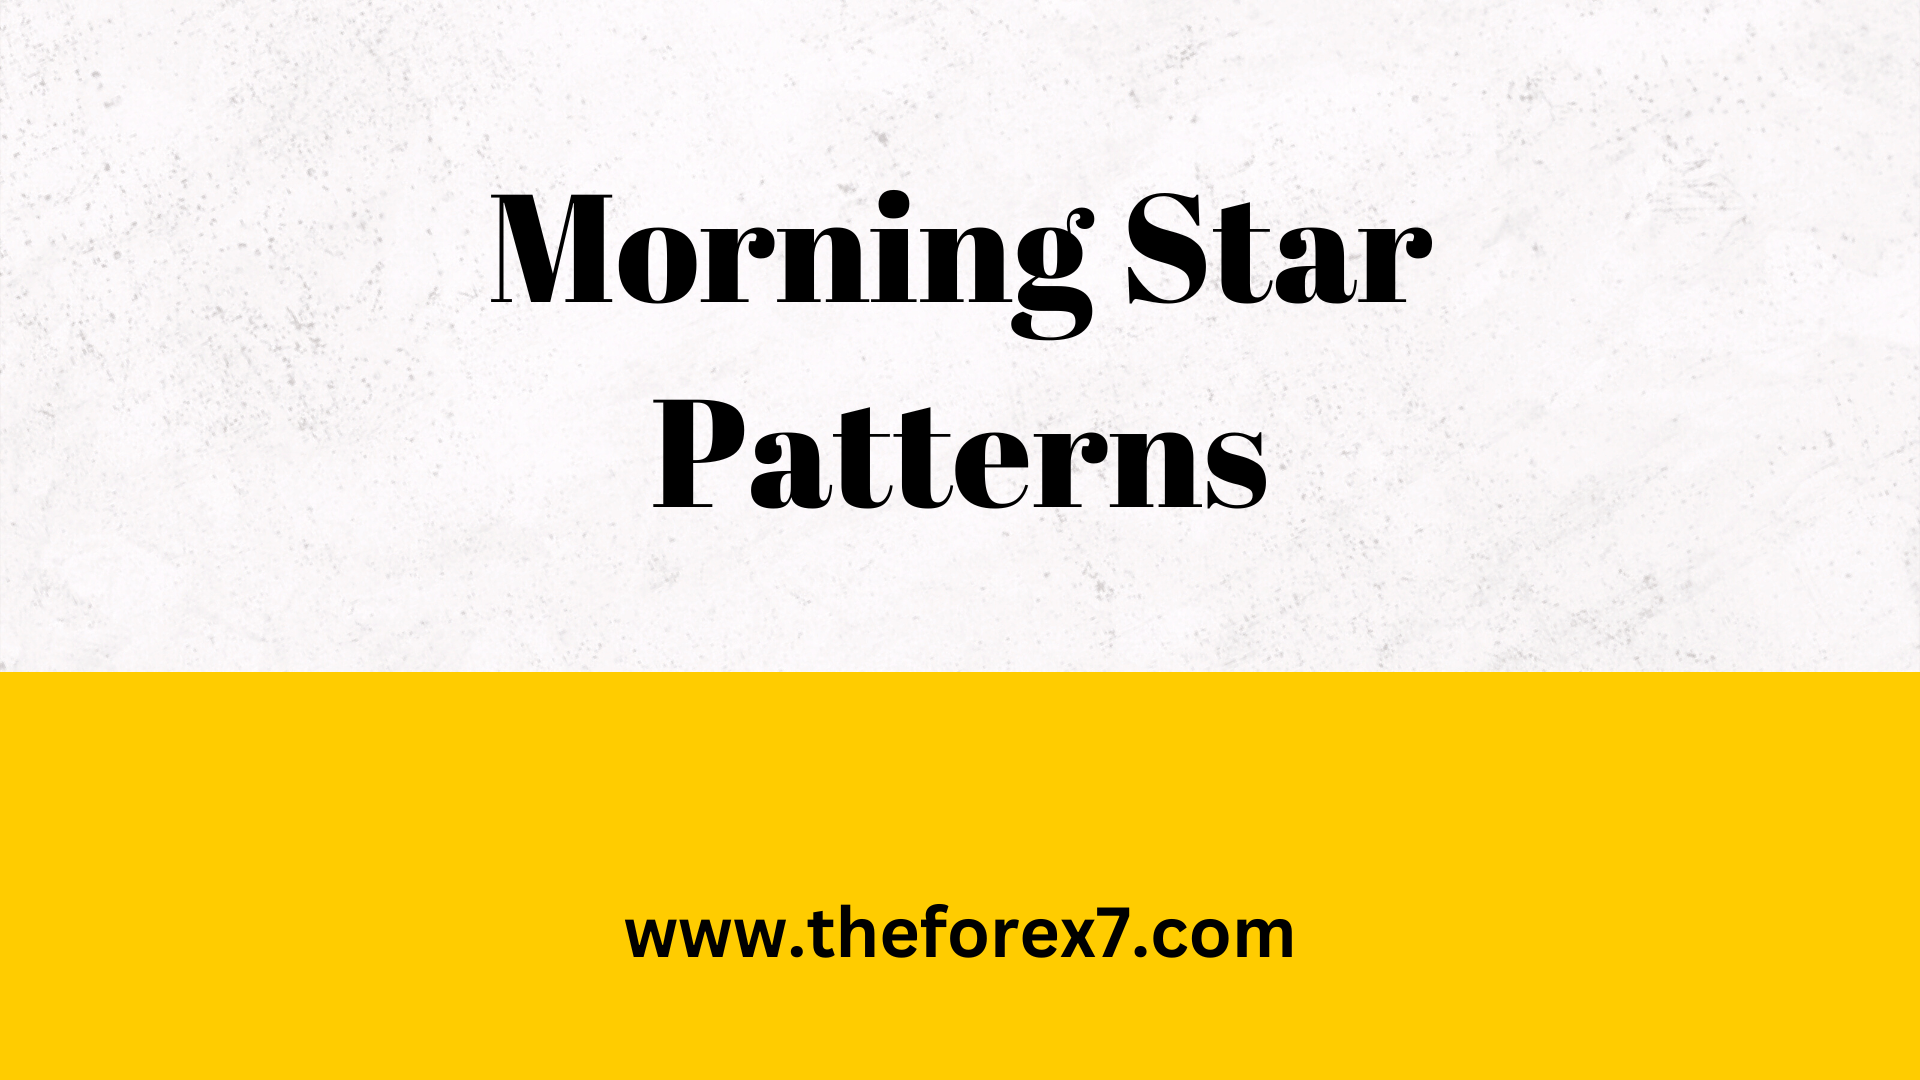 Summary of Morning Star Pattern